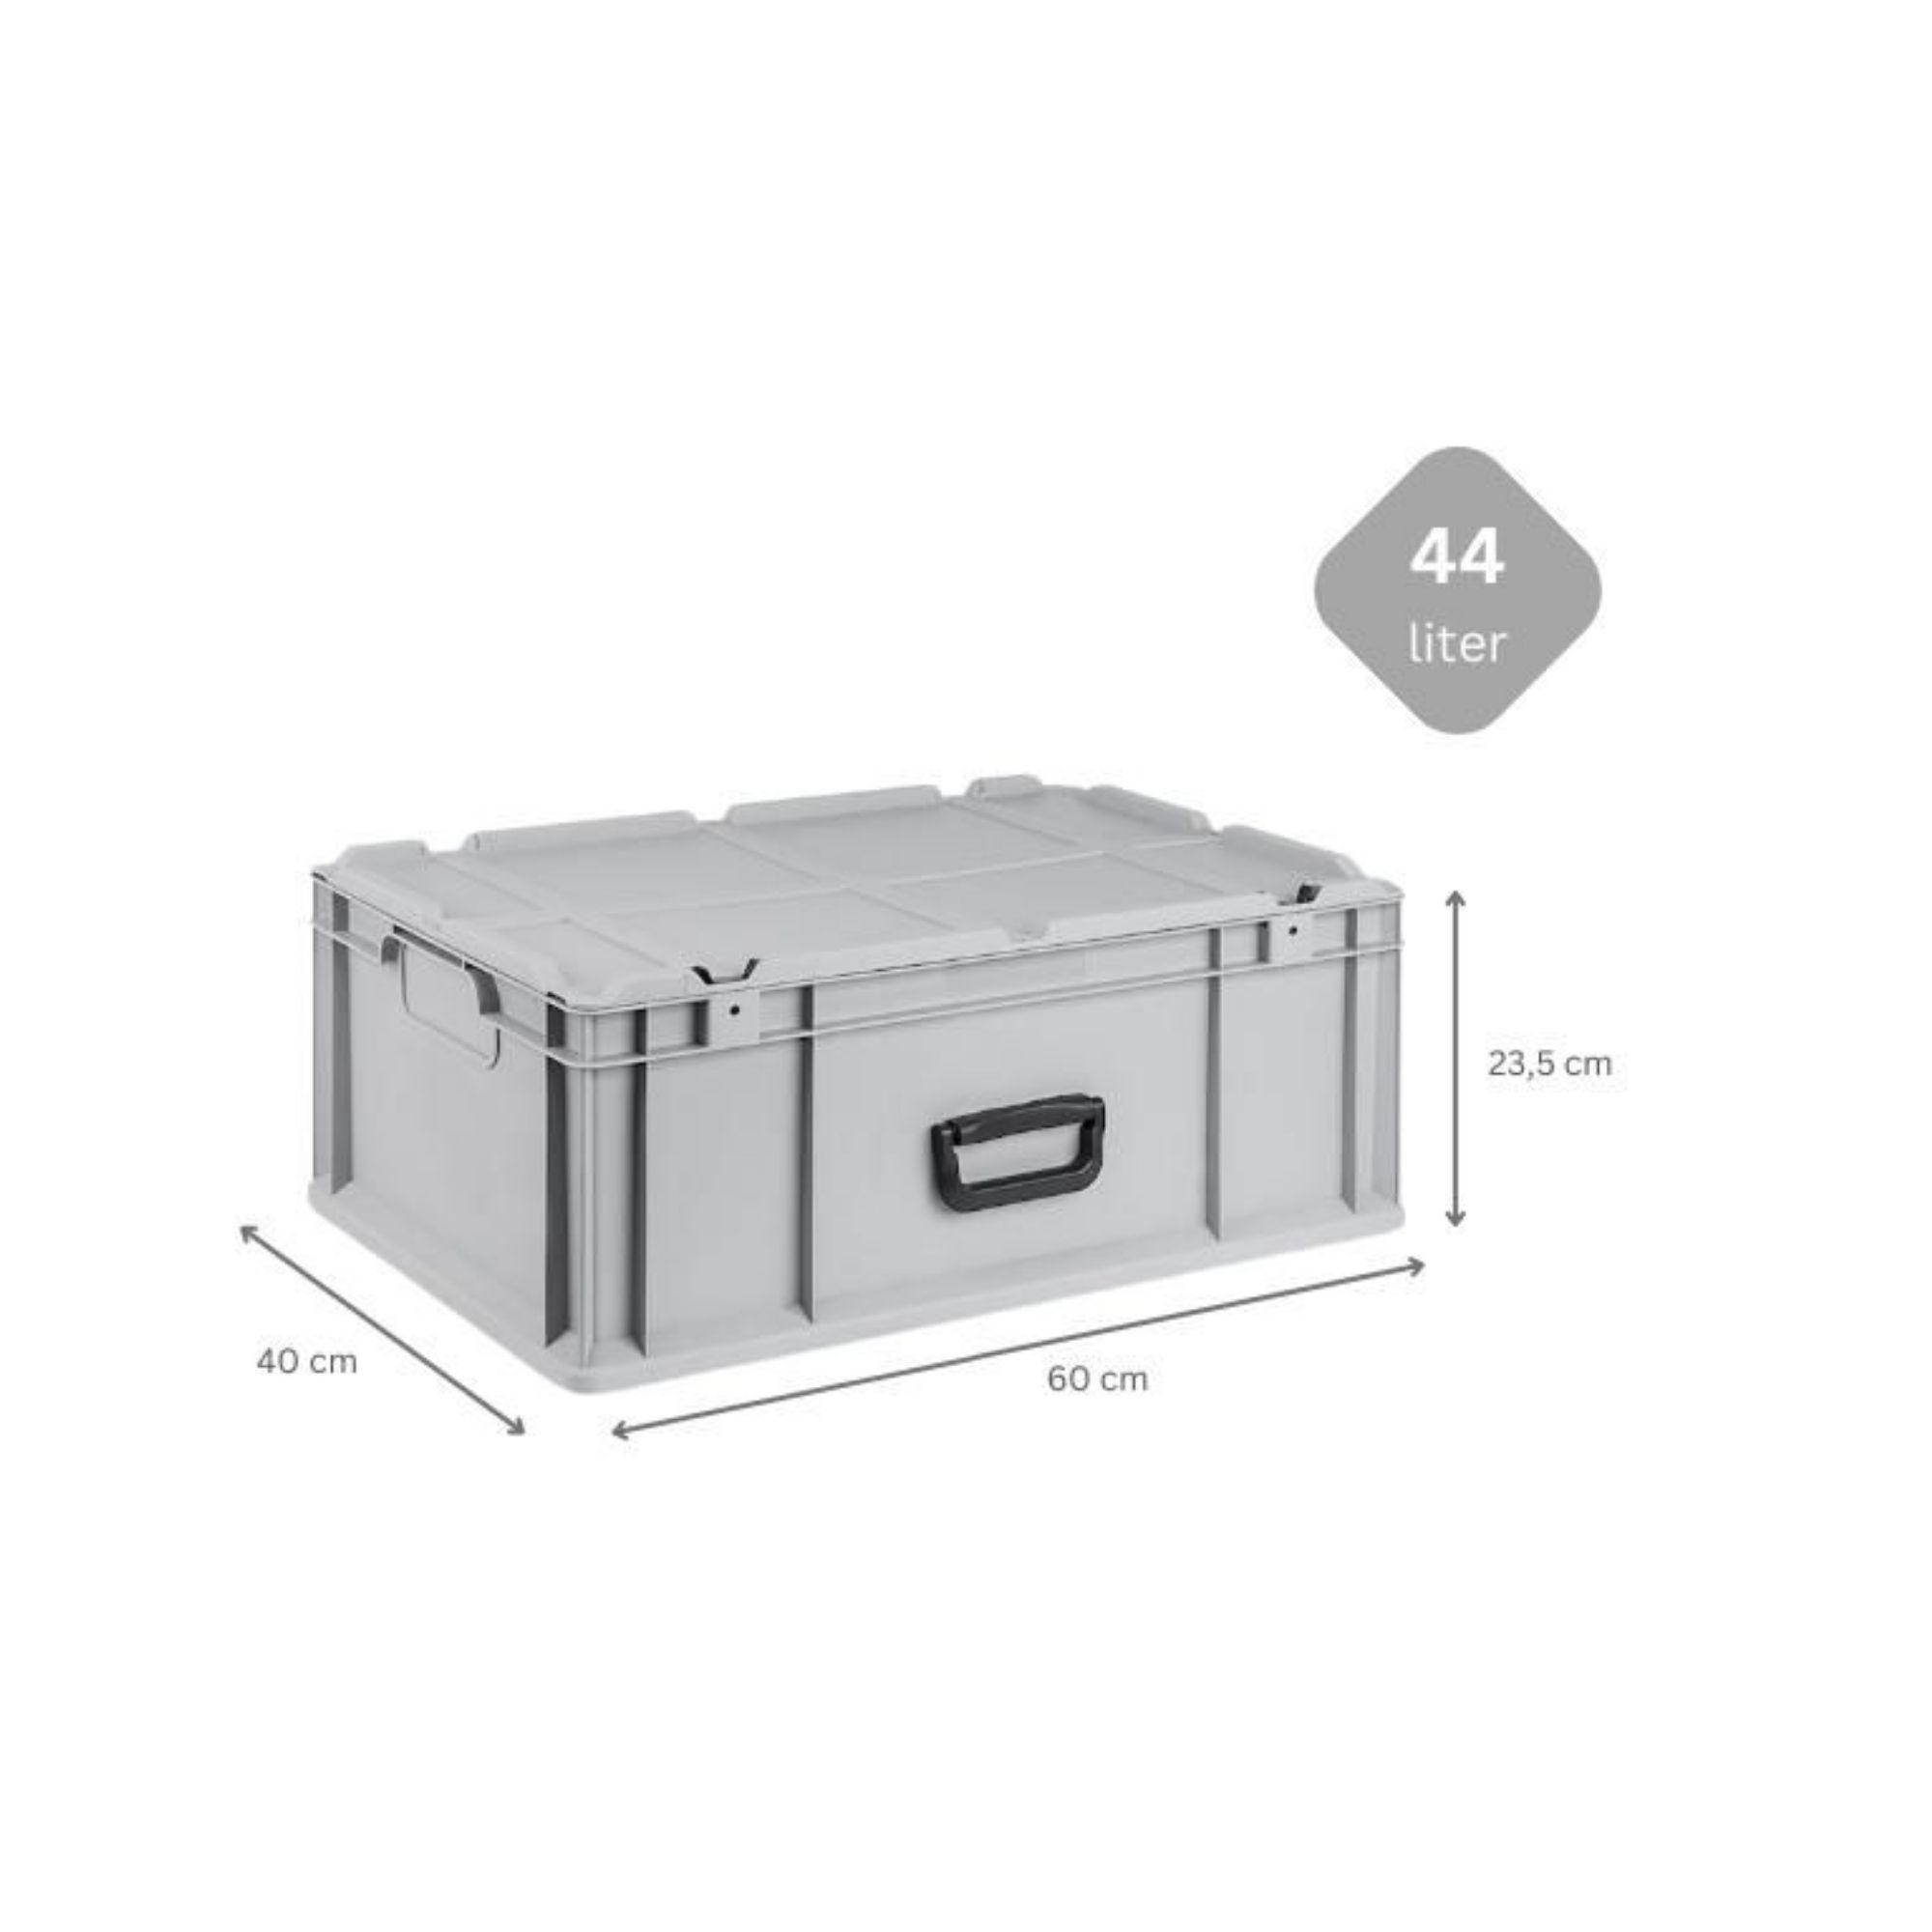 Eurobox NextGen Portable mit Rasterschaumstoff & Schaumstoffeinlage | HxBxT 23,5x40x60cm | 44 Liter | Eurobehälter, Transportbox, Transportbehälter, Stapelbehälter